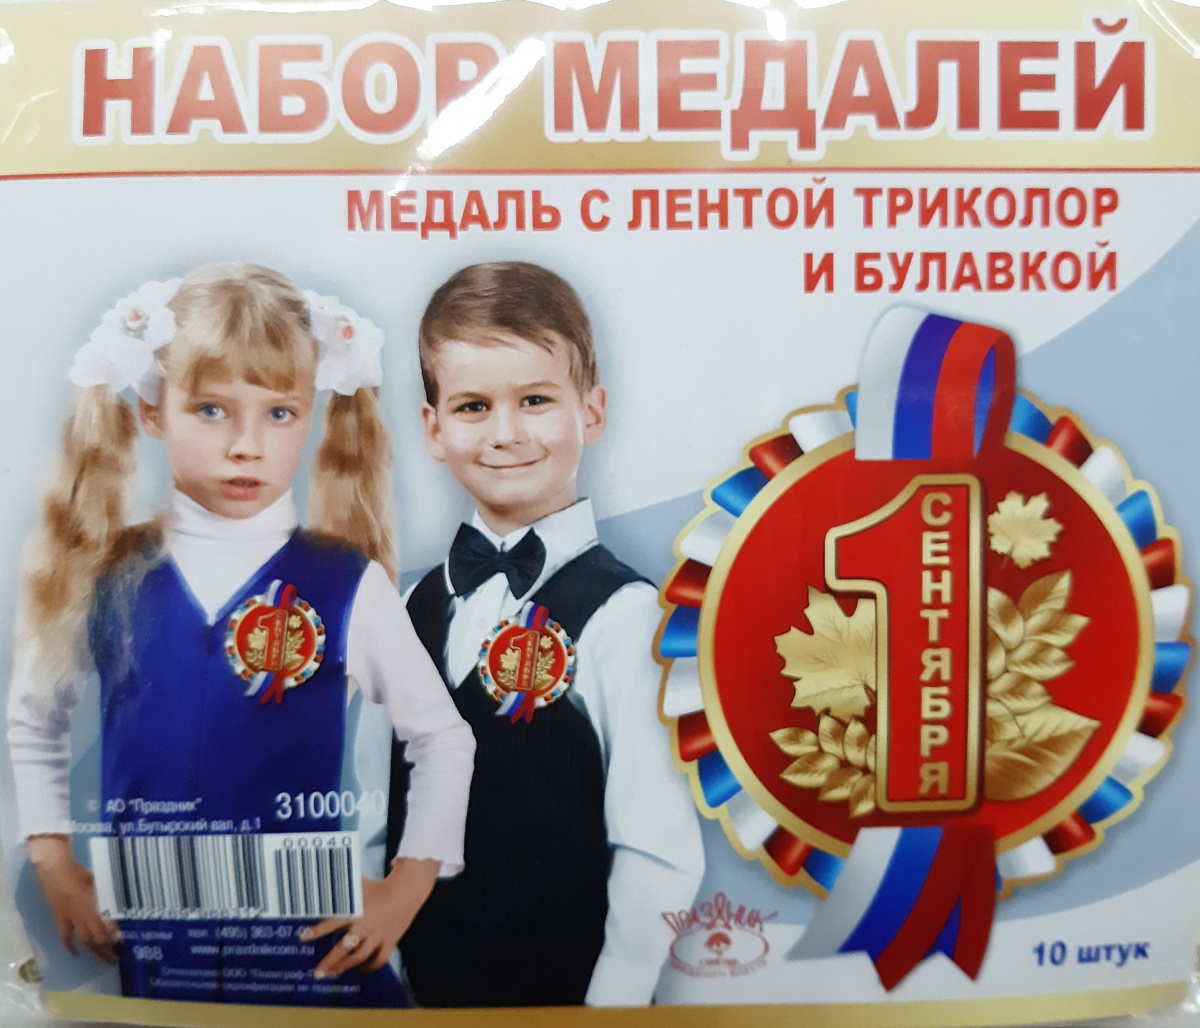 Набор медалей с лентой триколор и булавкой "1 СЕНТЯБРЯ"